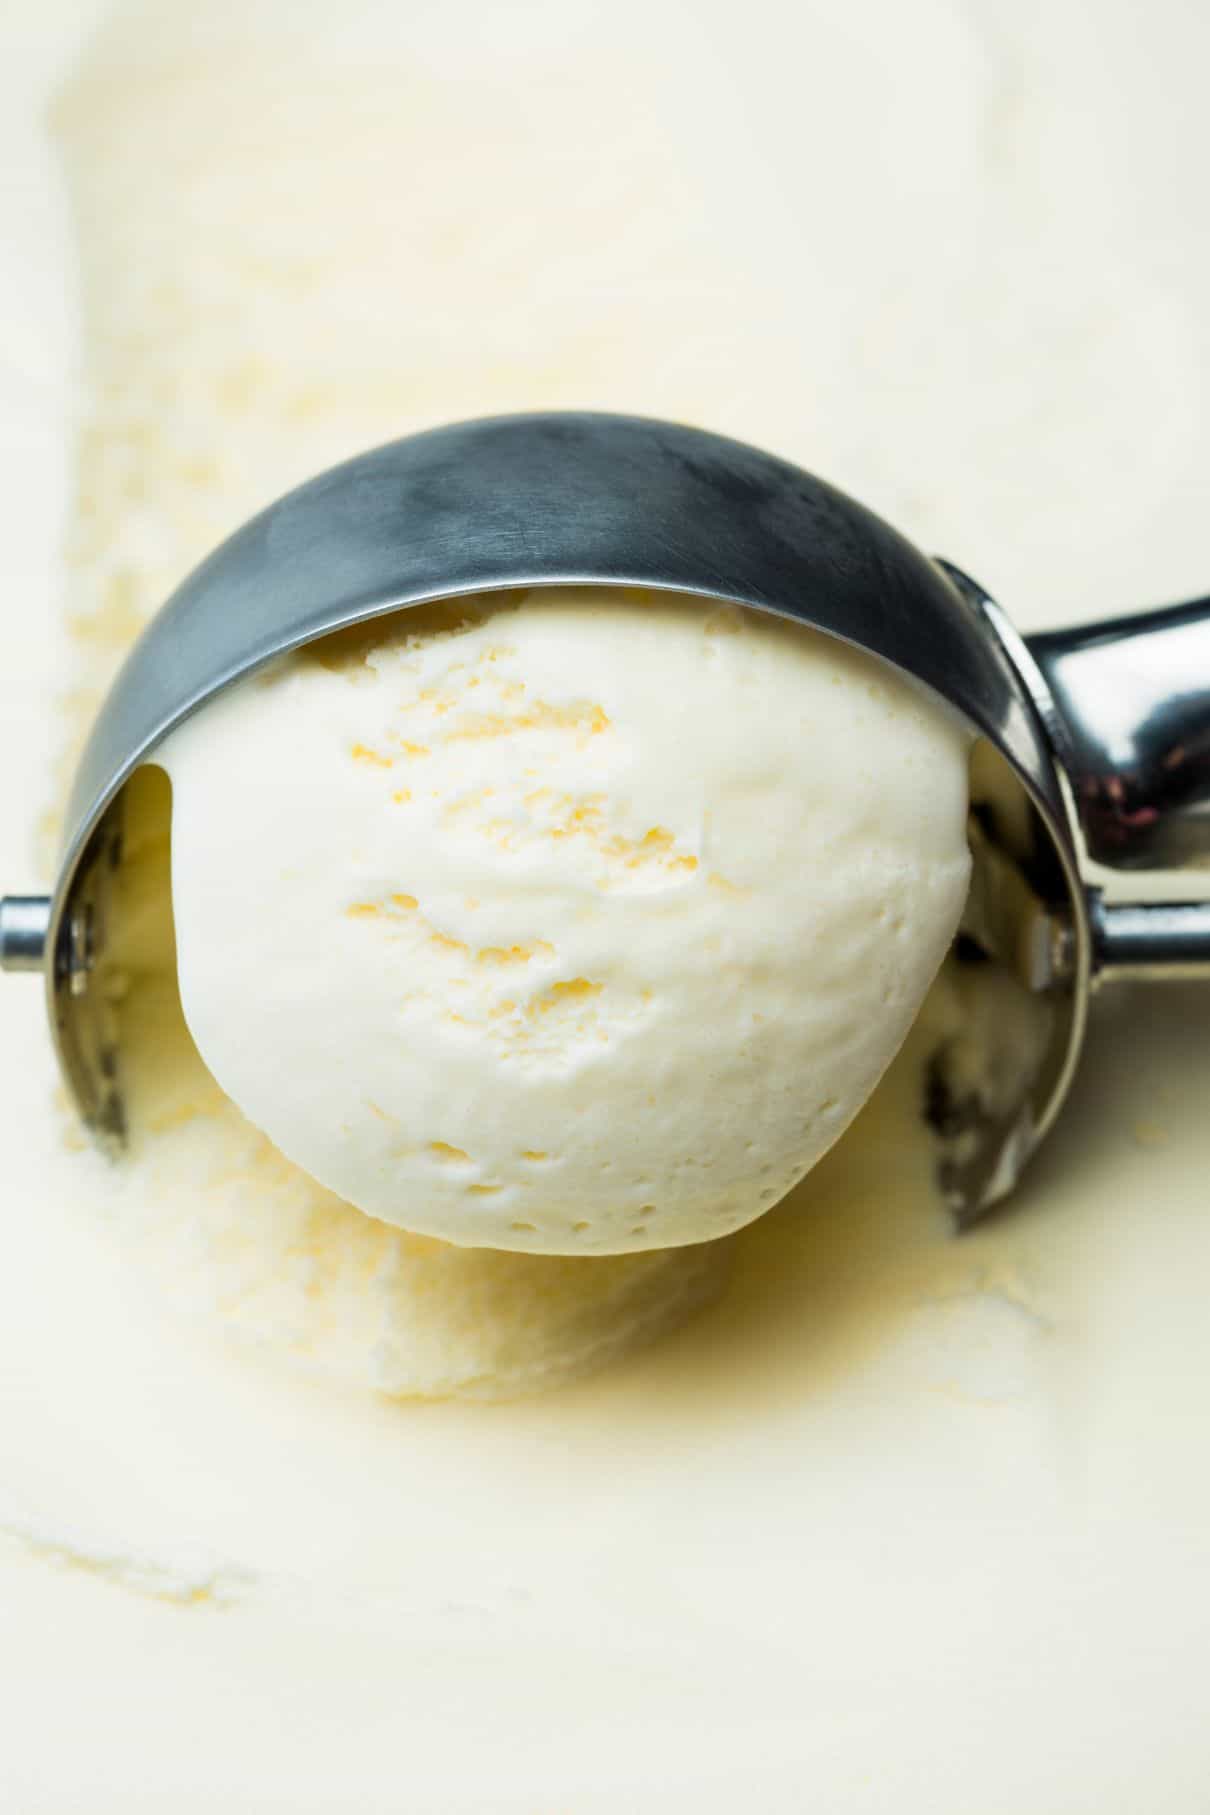 Ice cream scoop in vanilla ice cream